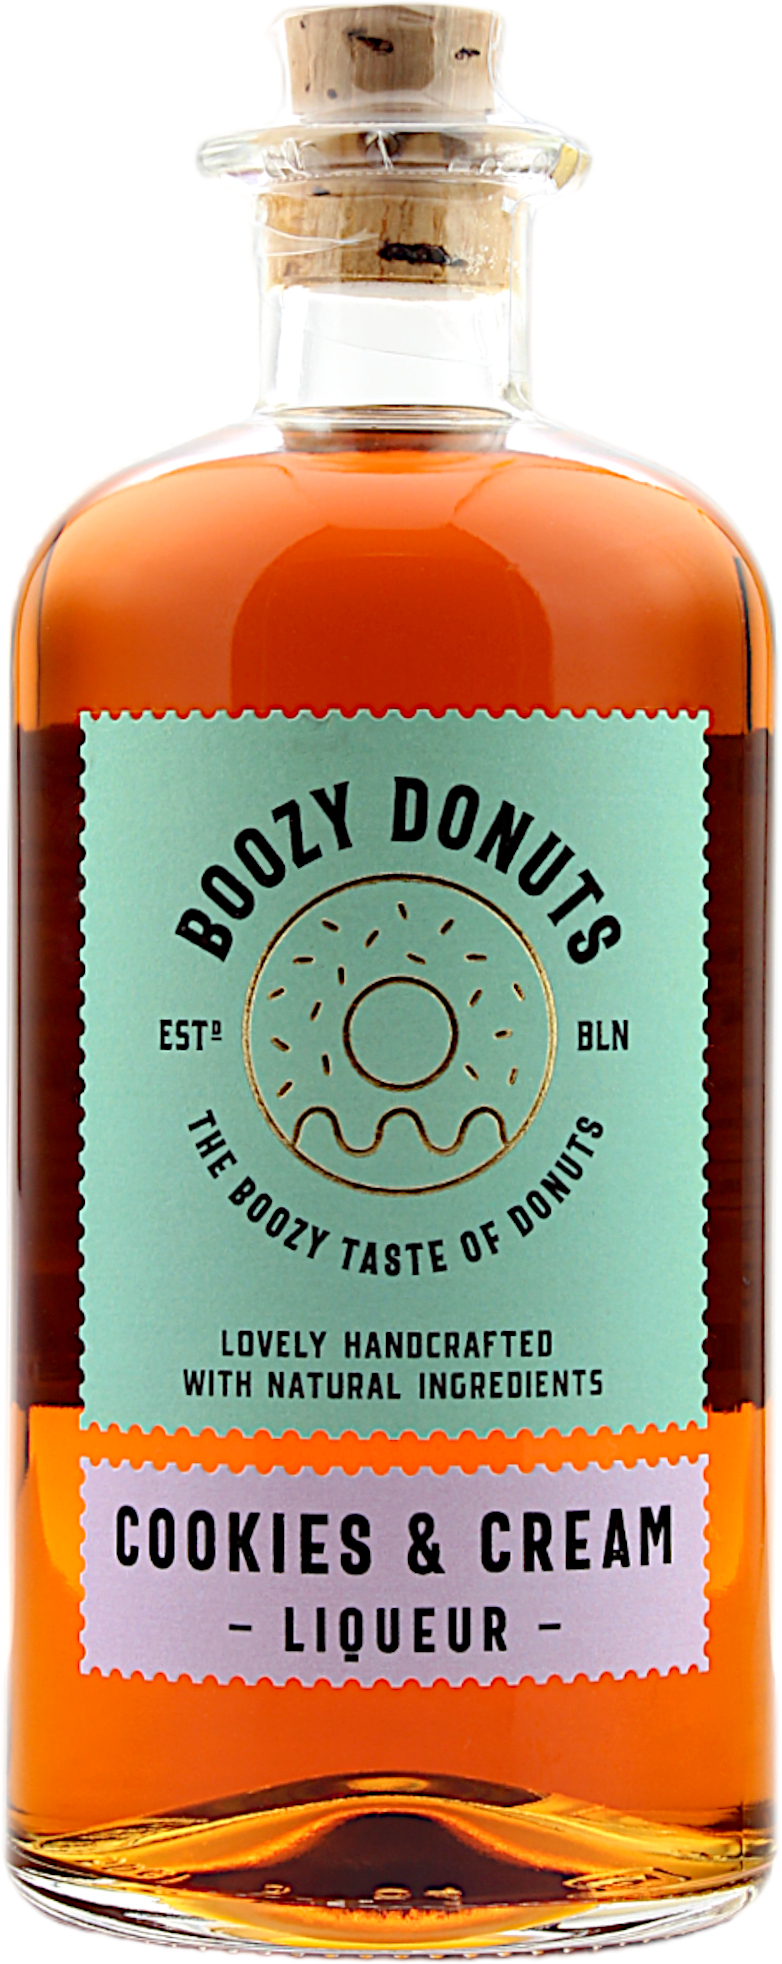 Boozy Donuts Cookies & Cream 17.0% 0,5l